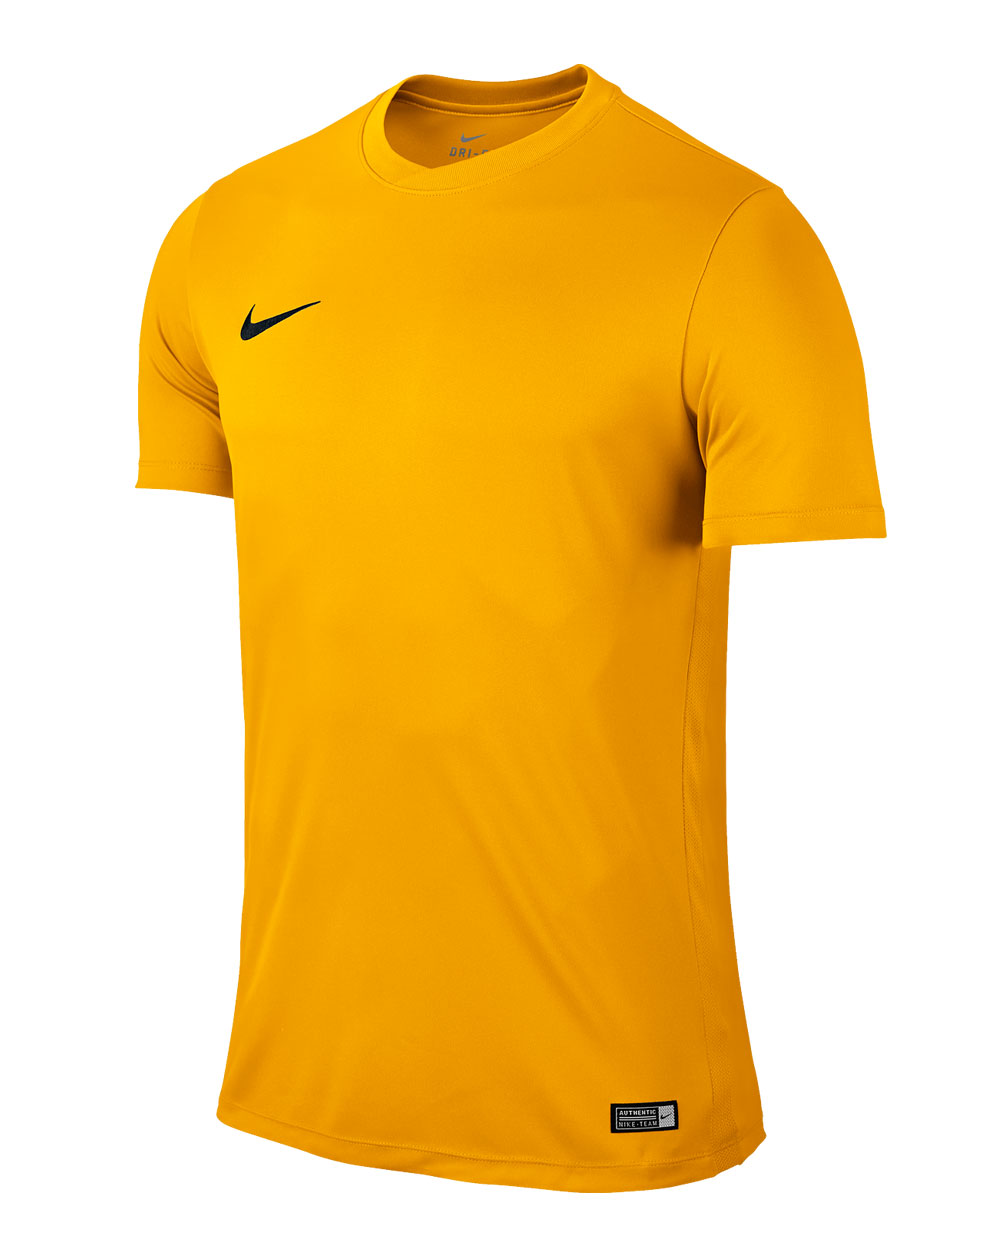 Buy Camiseta Nike Amarilla | TO OFF